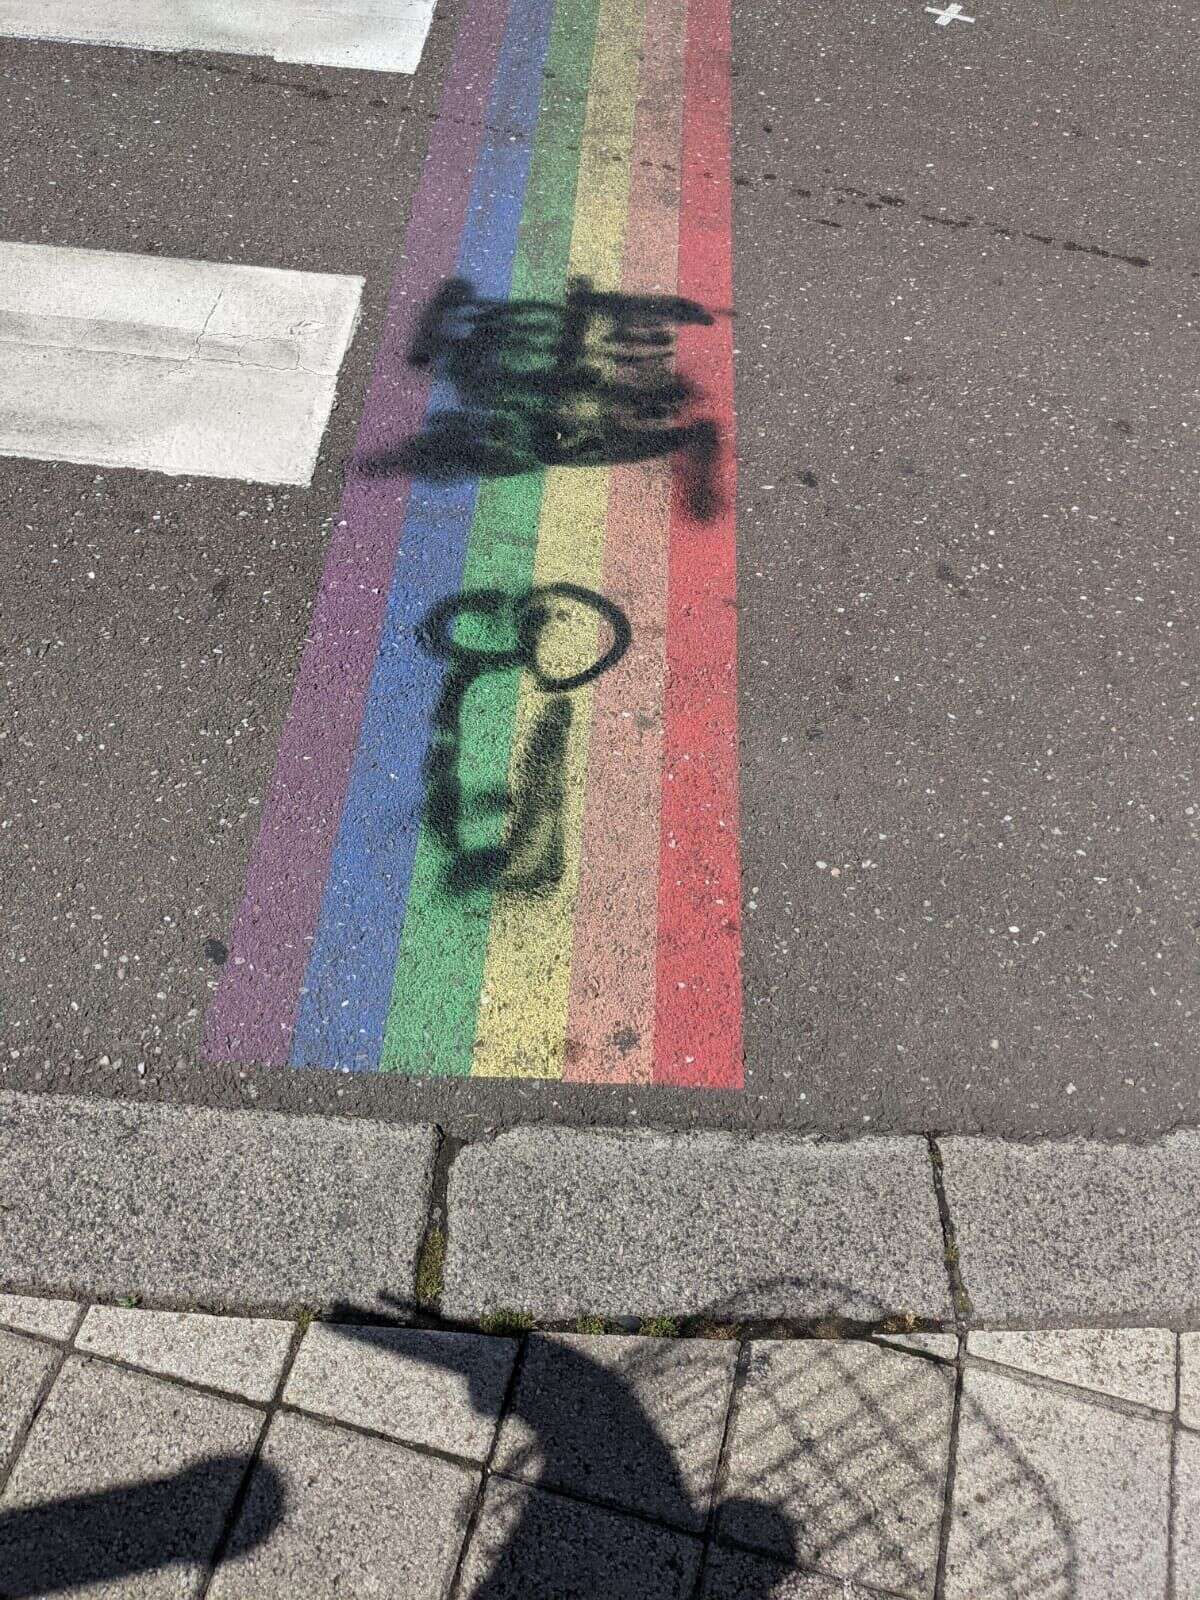 À Besançon, une croix gammée et un pénis ont été dessinés sur un passage piéton aux couleurs du drapeau LGBT. La mairie de la ville a dénoncé ce méfait et déposé plainte.